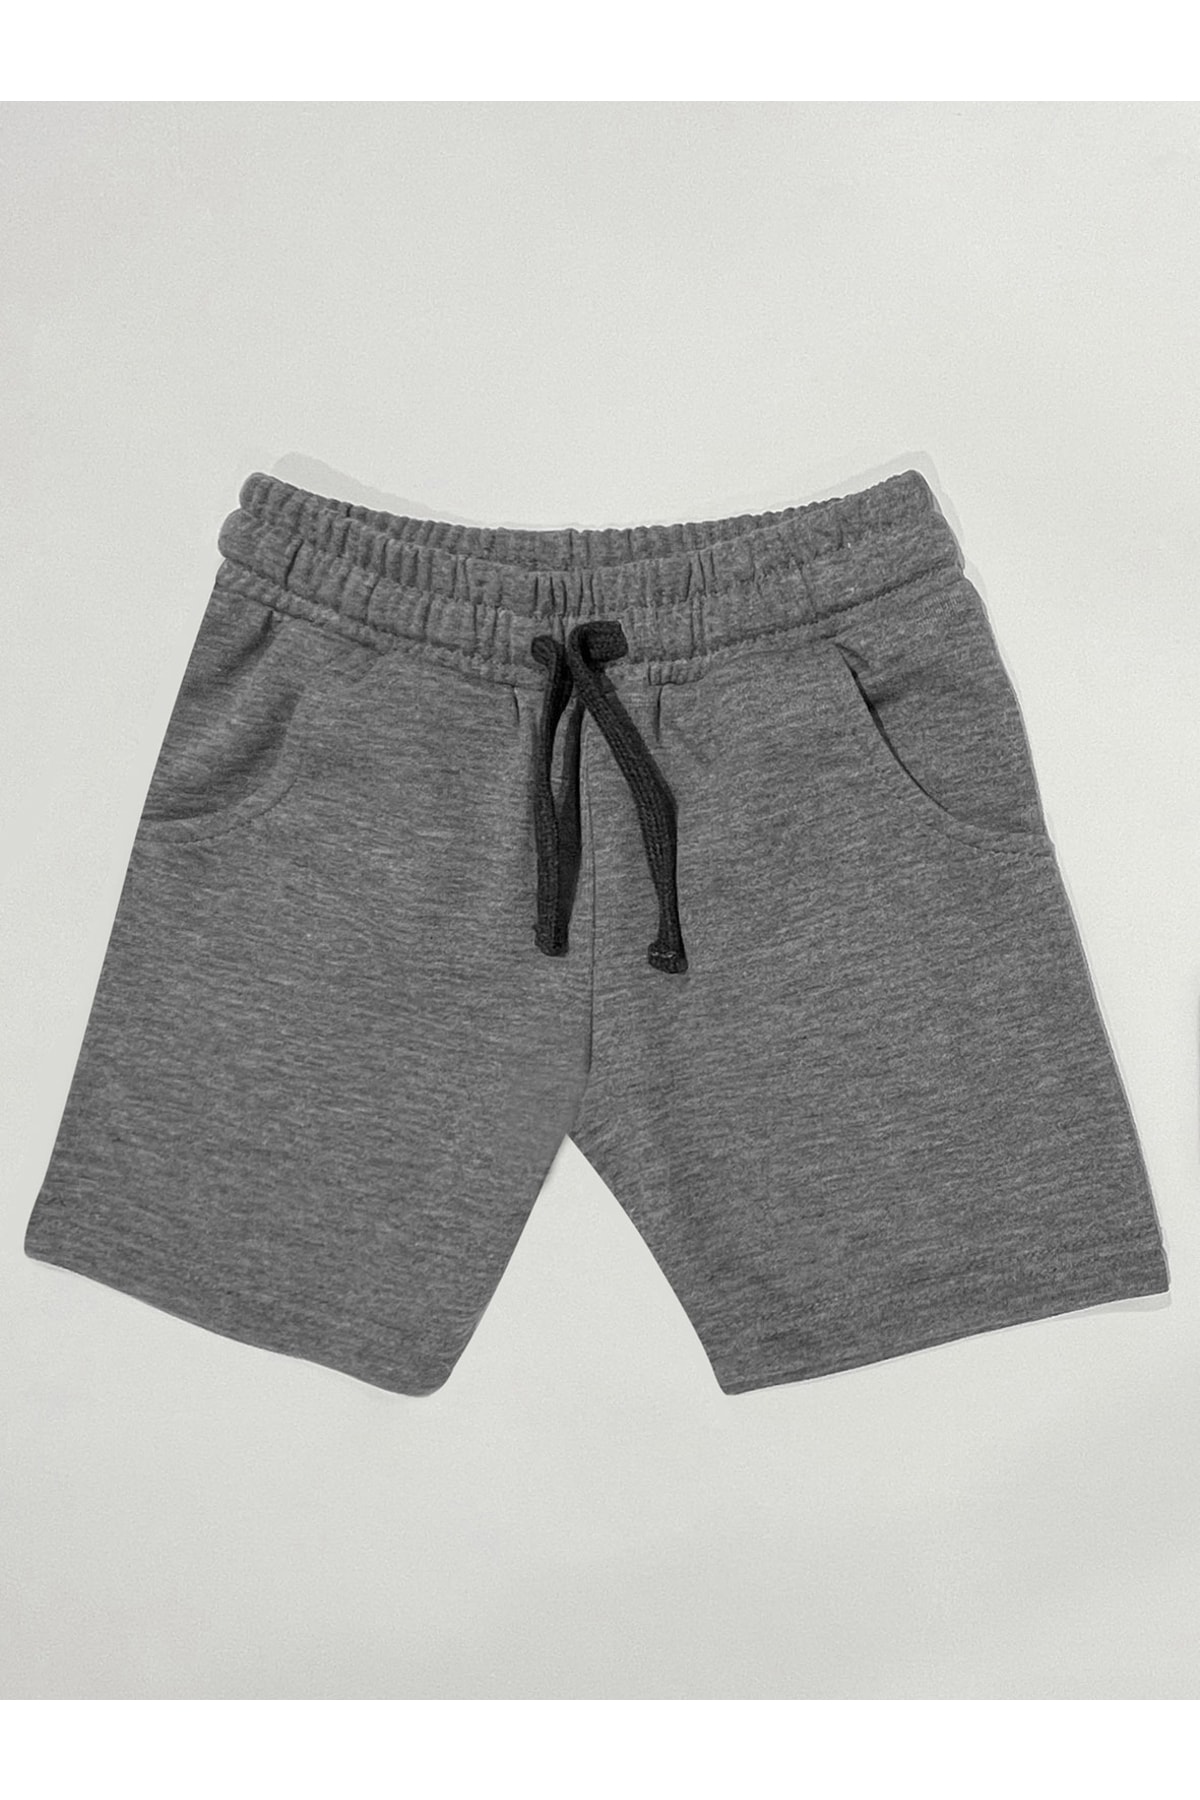 Levně Denokids Basic Boys' Gray Shorts